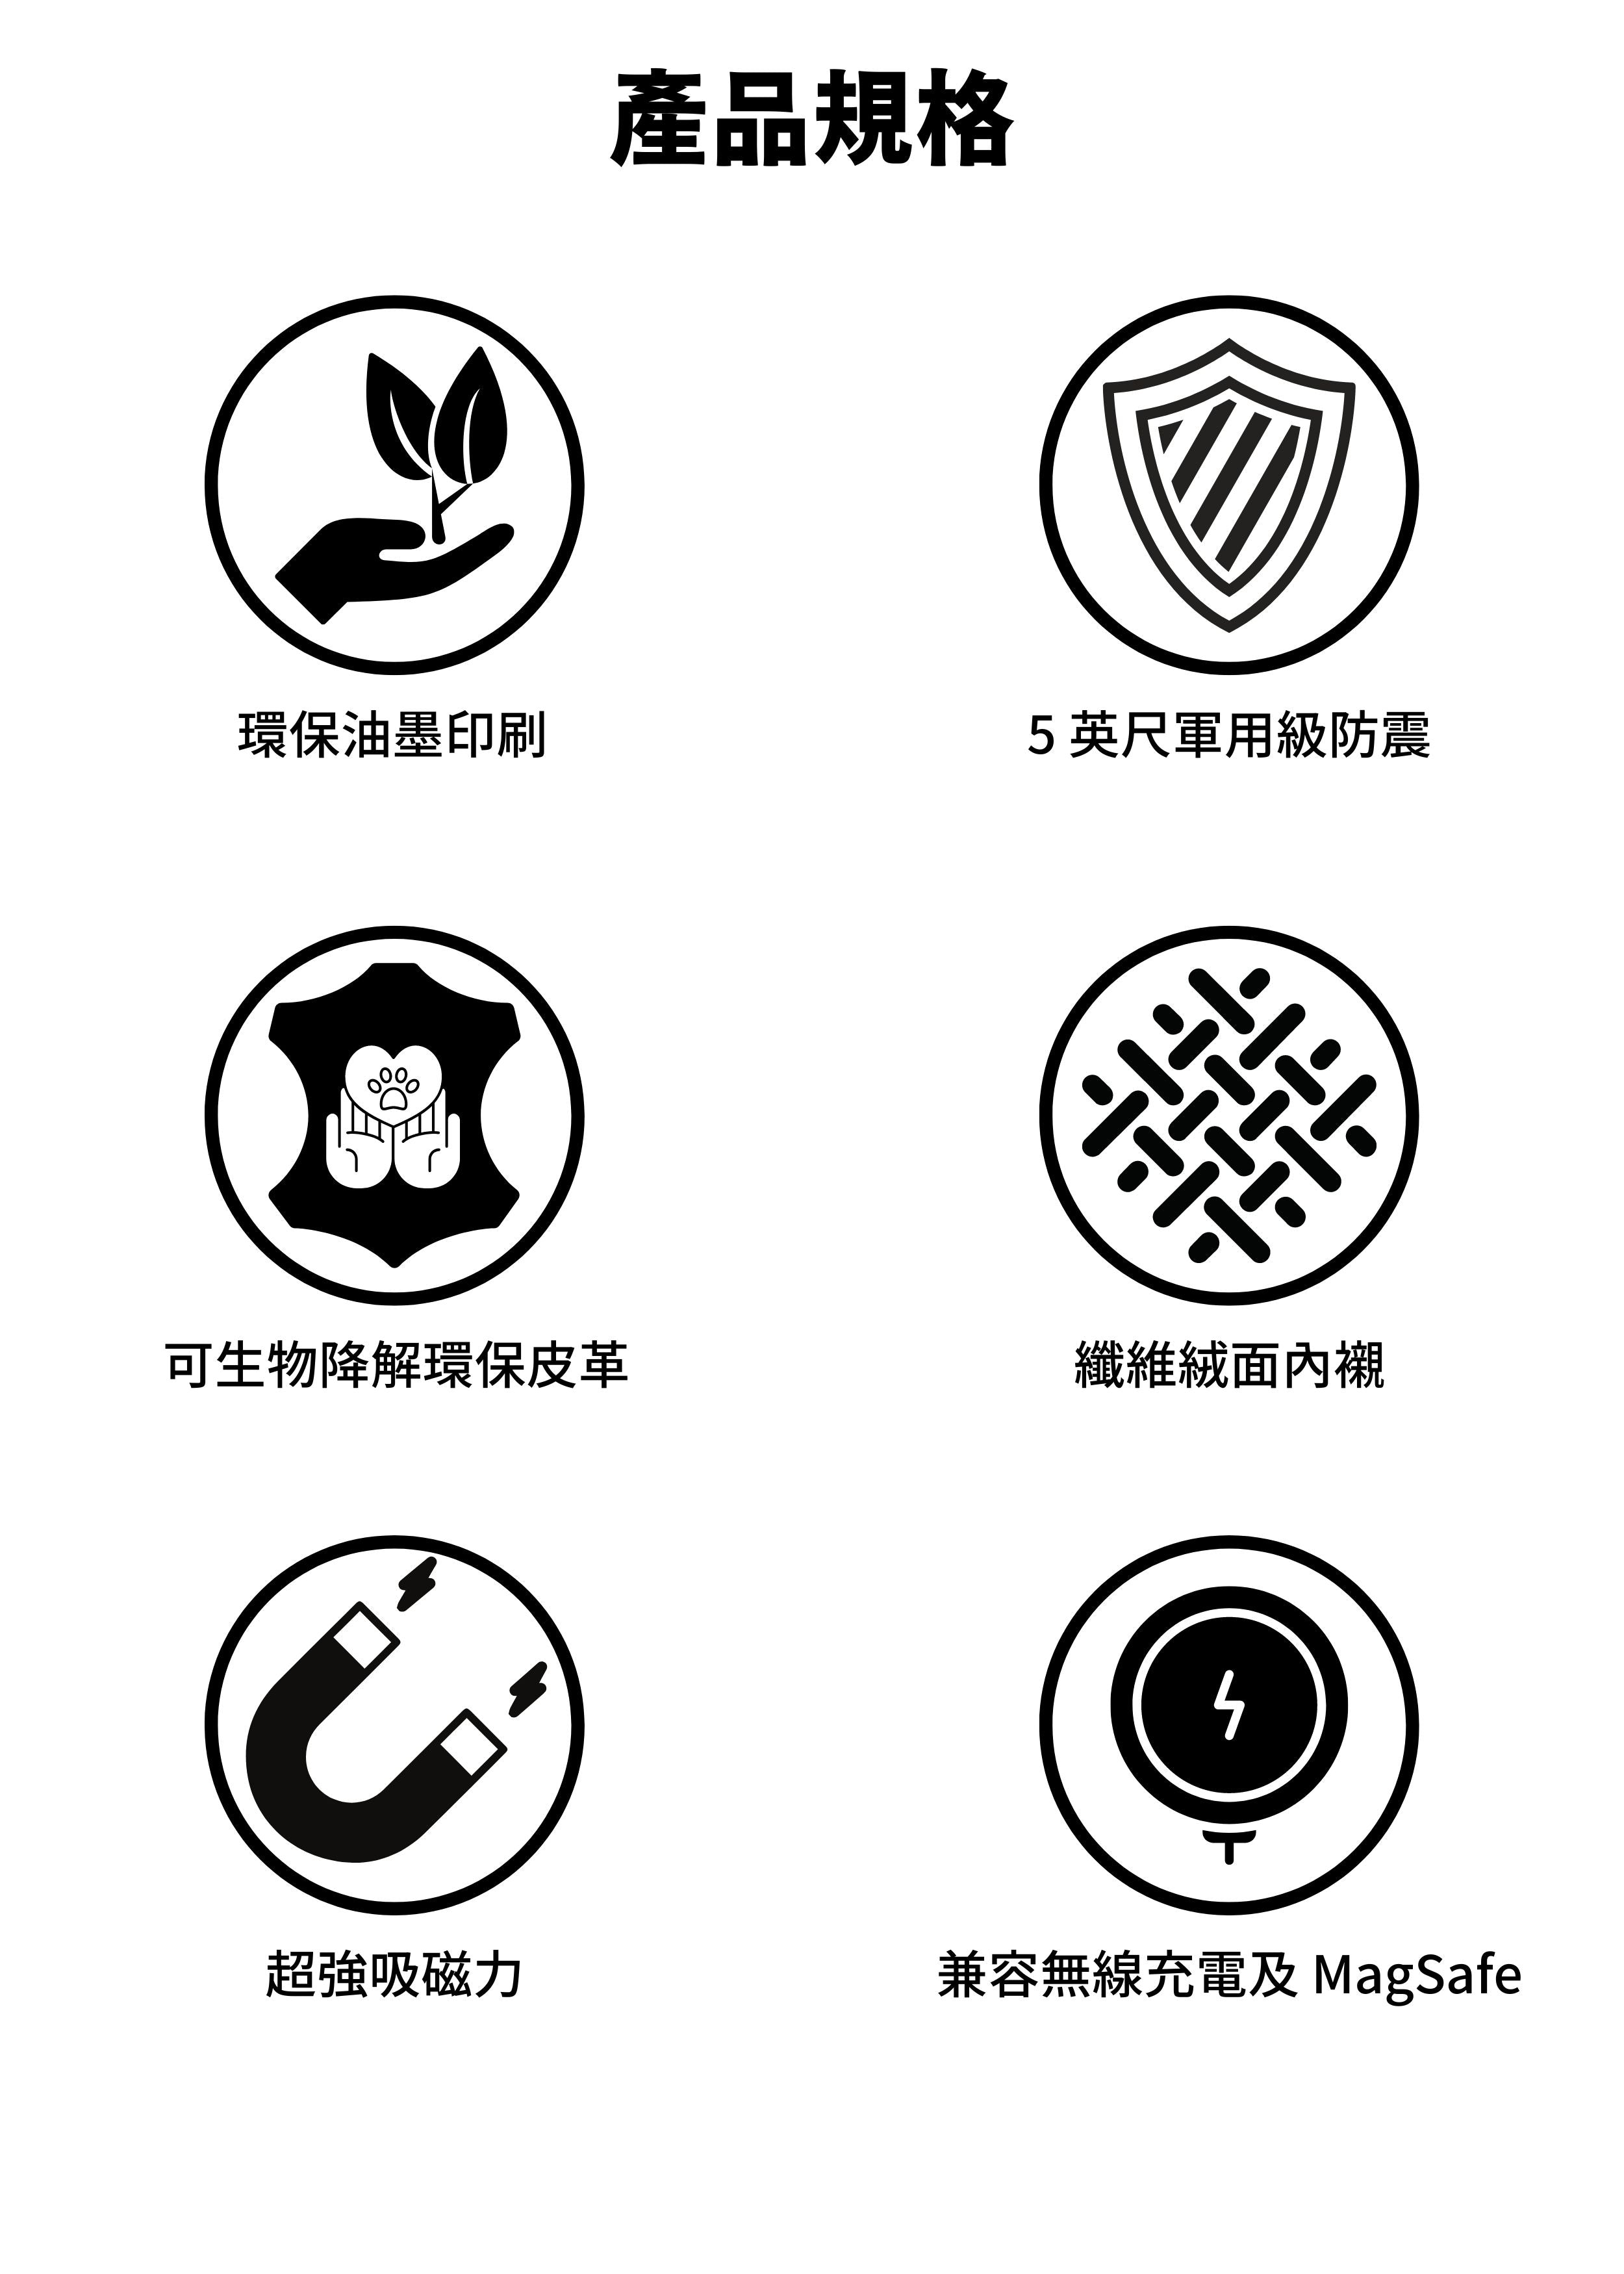 iPhone Magsafe 兼容皮革保護殼 產品資料